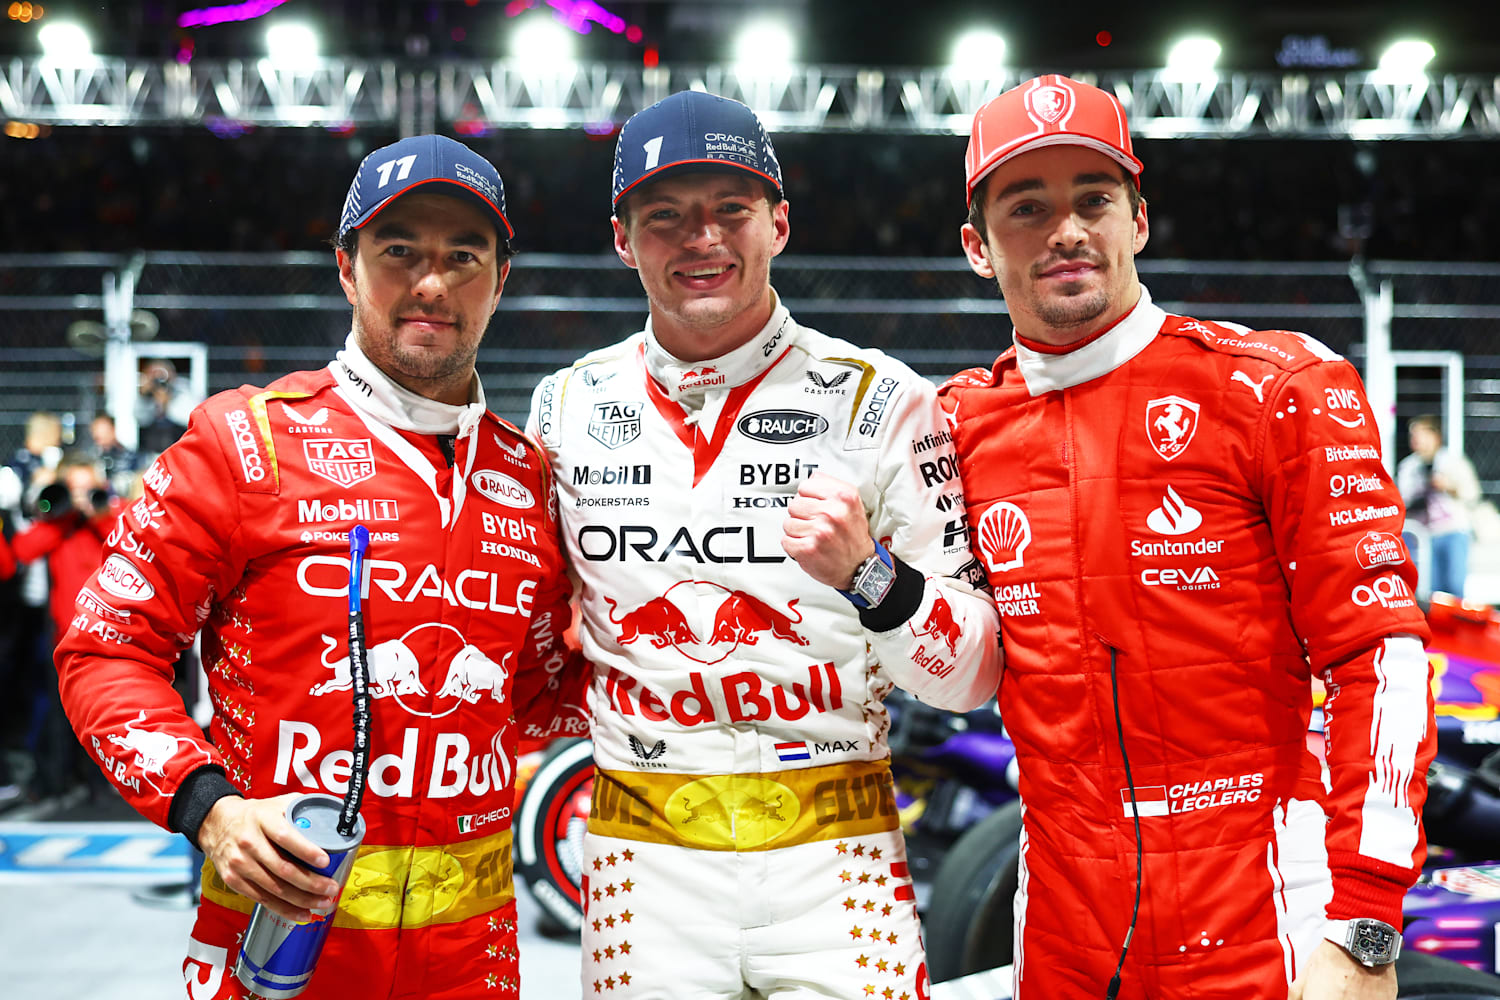 F1 Grand Prix race results: Sergio Perez wins Monaco GP